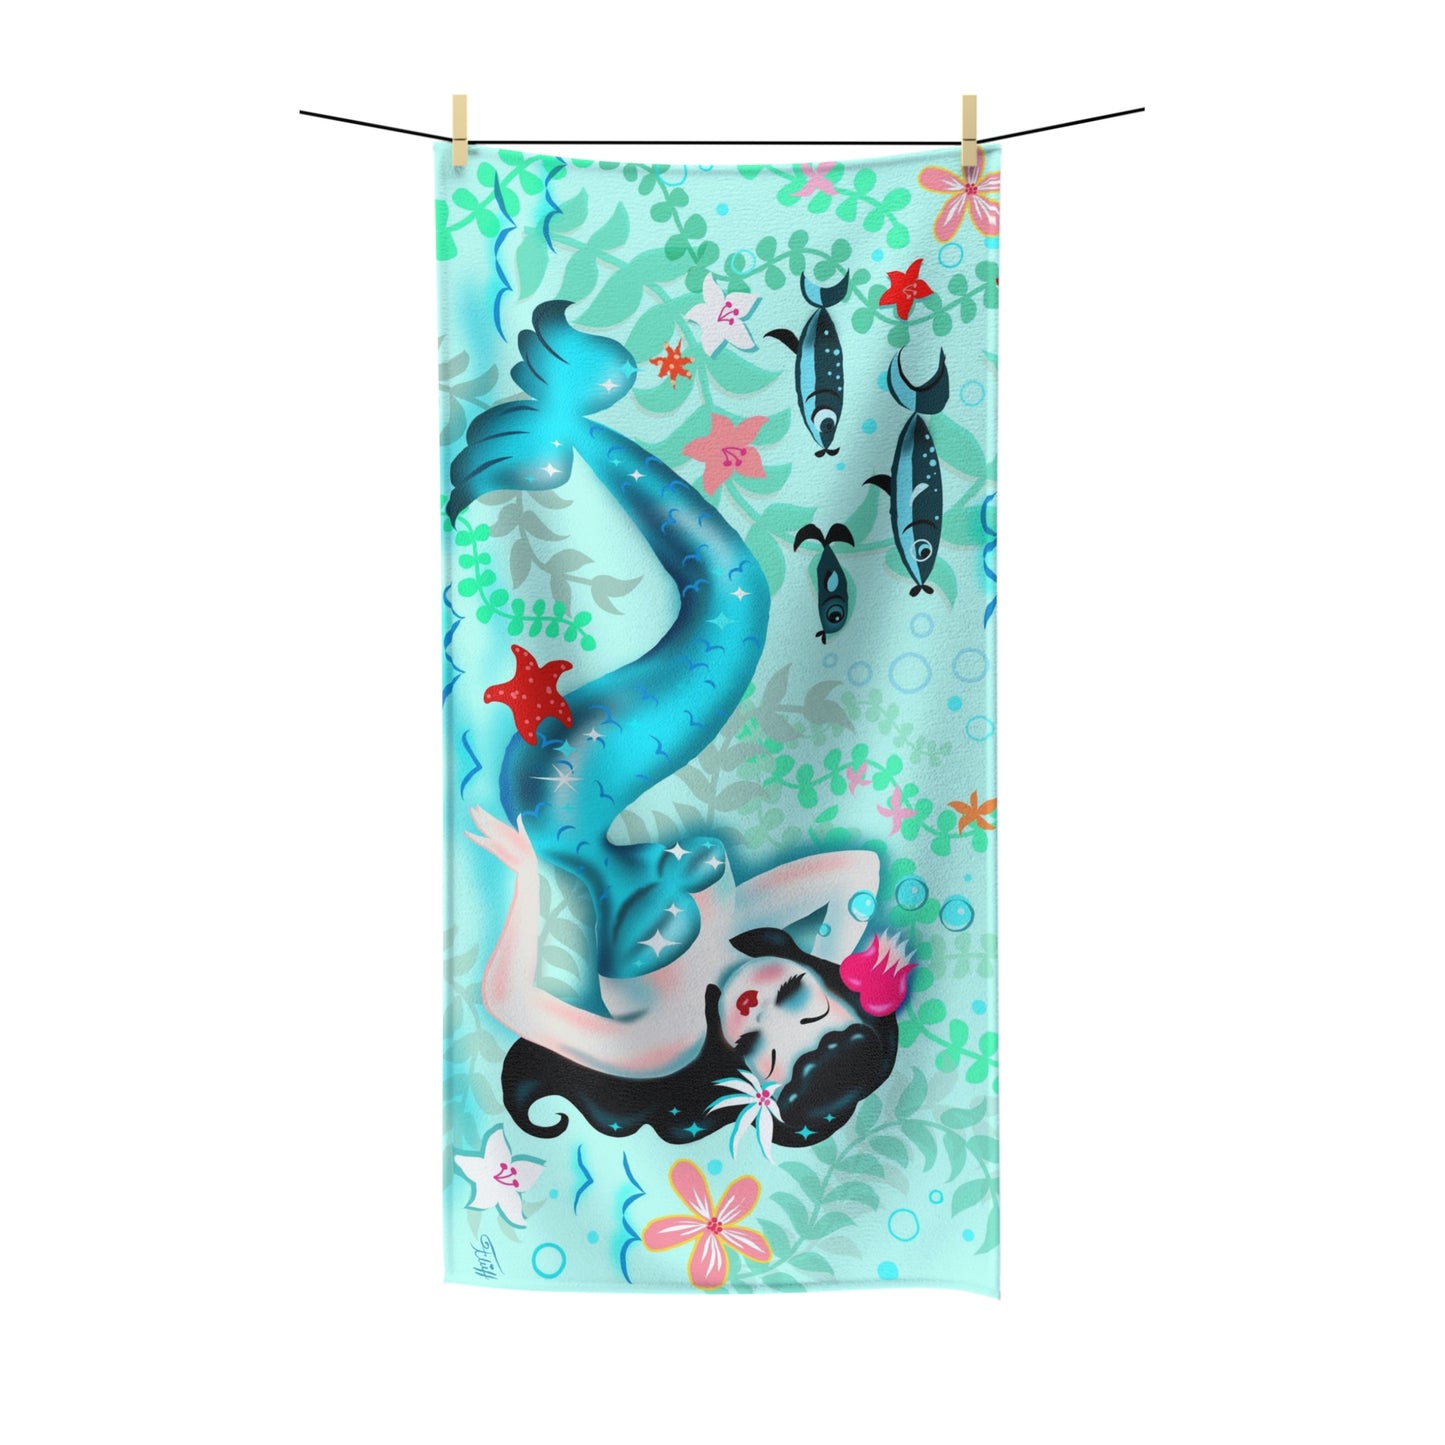 Dozing Mermaid • Towel